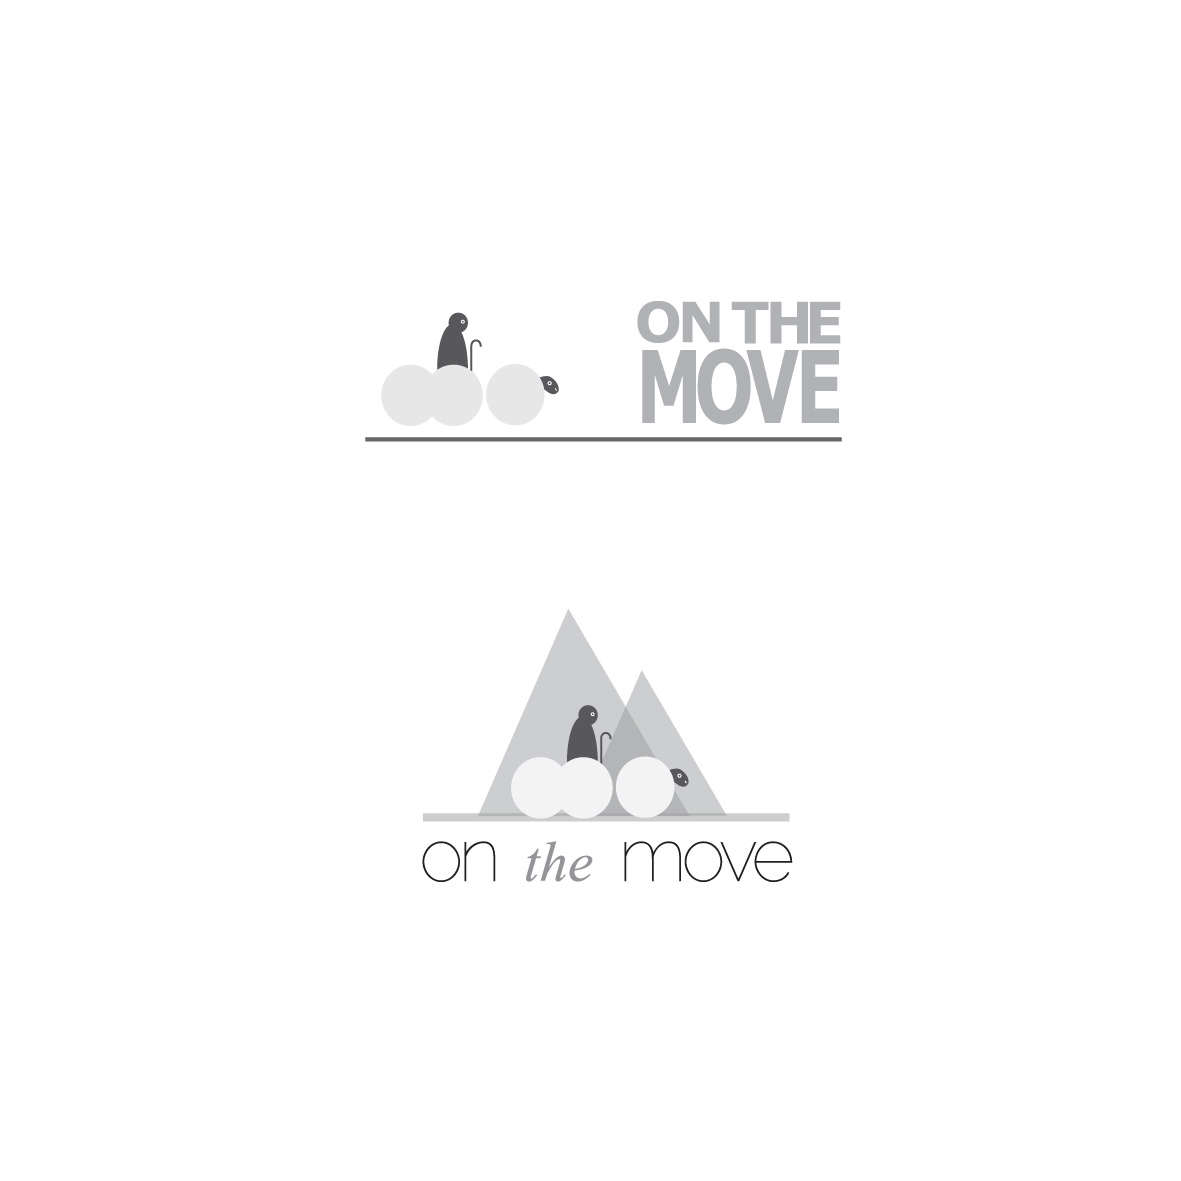 On The Move logo idea 1